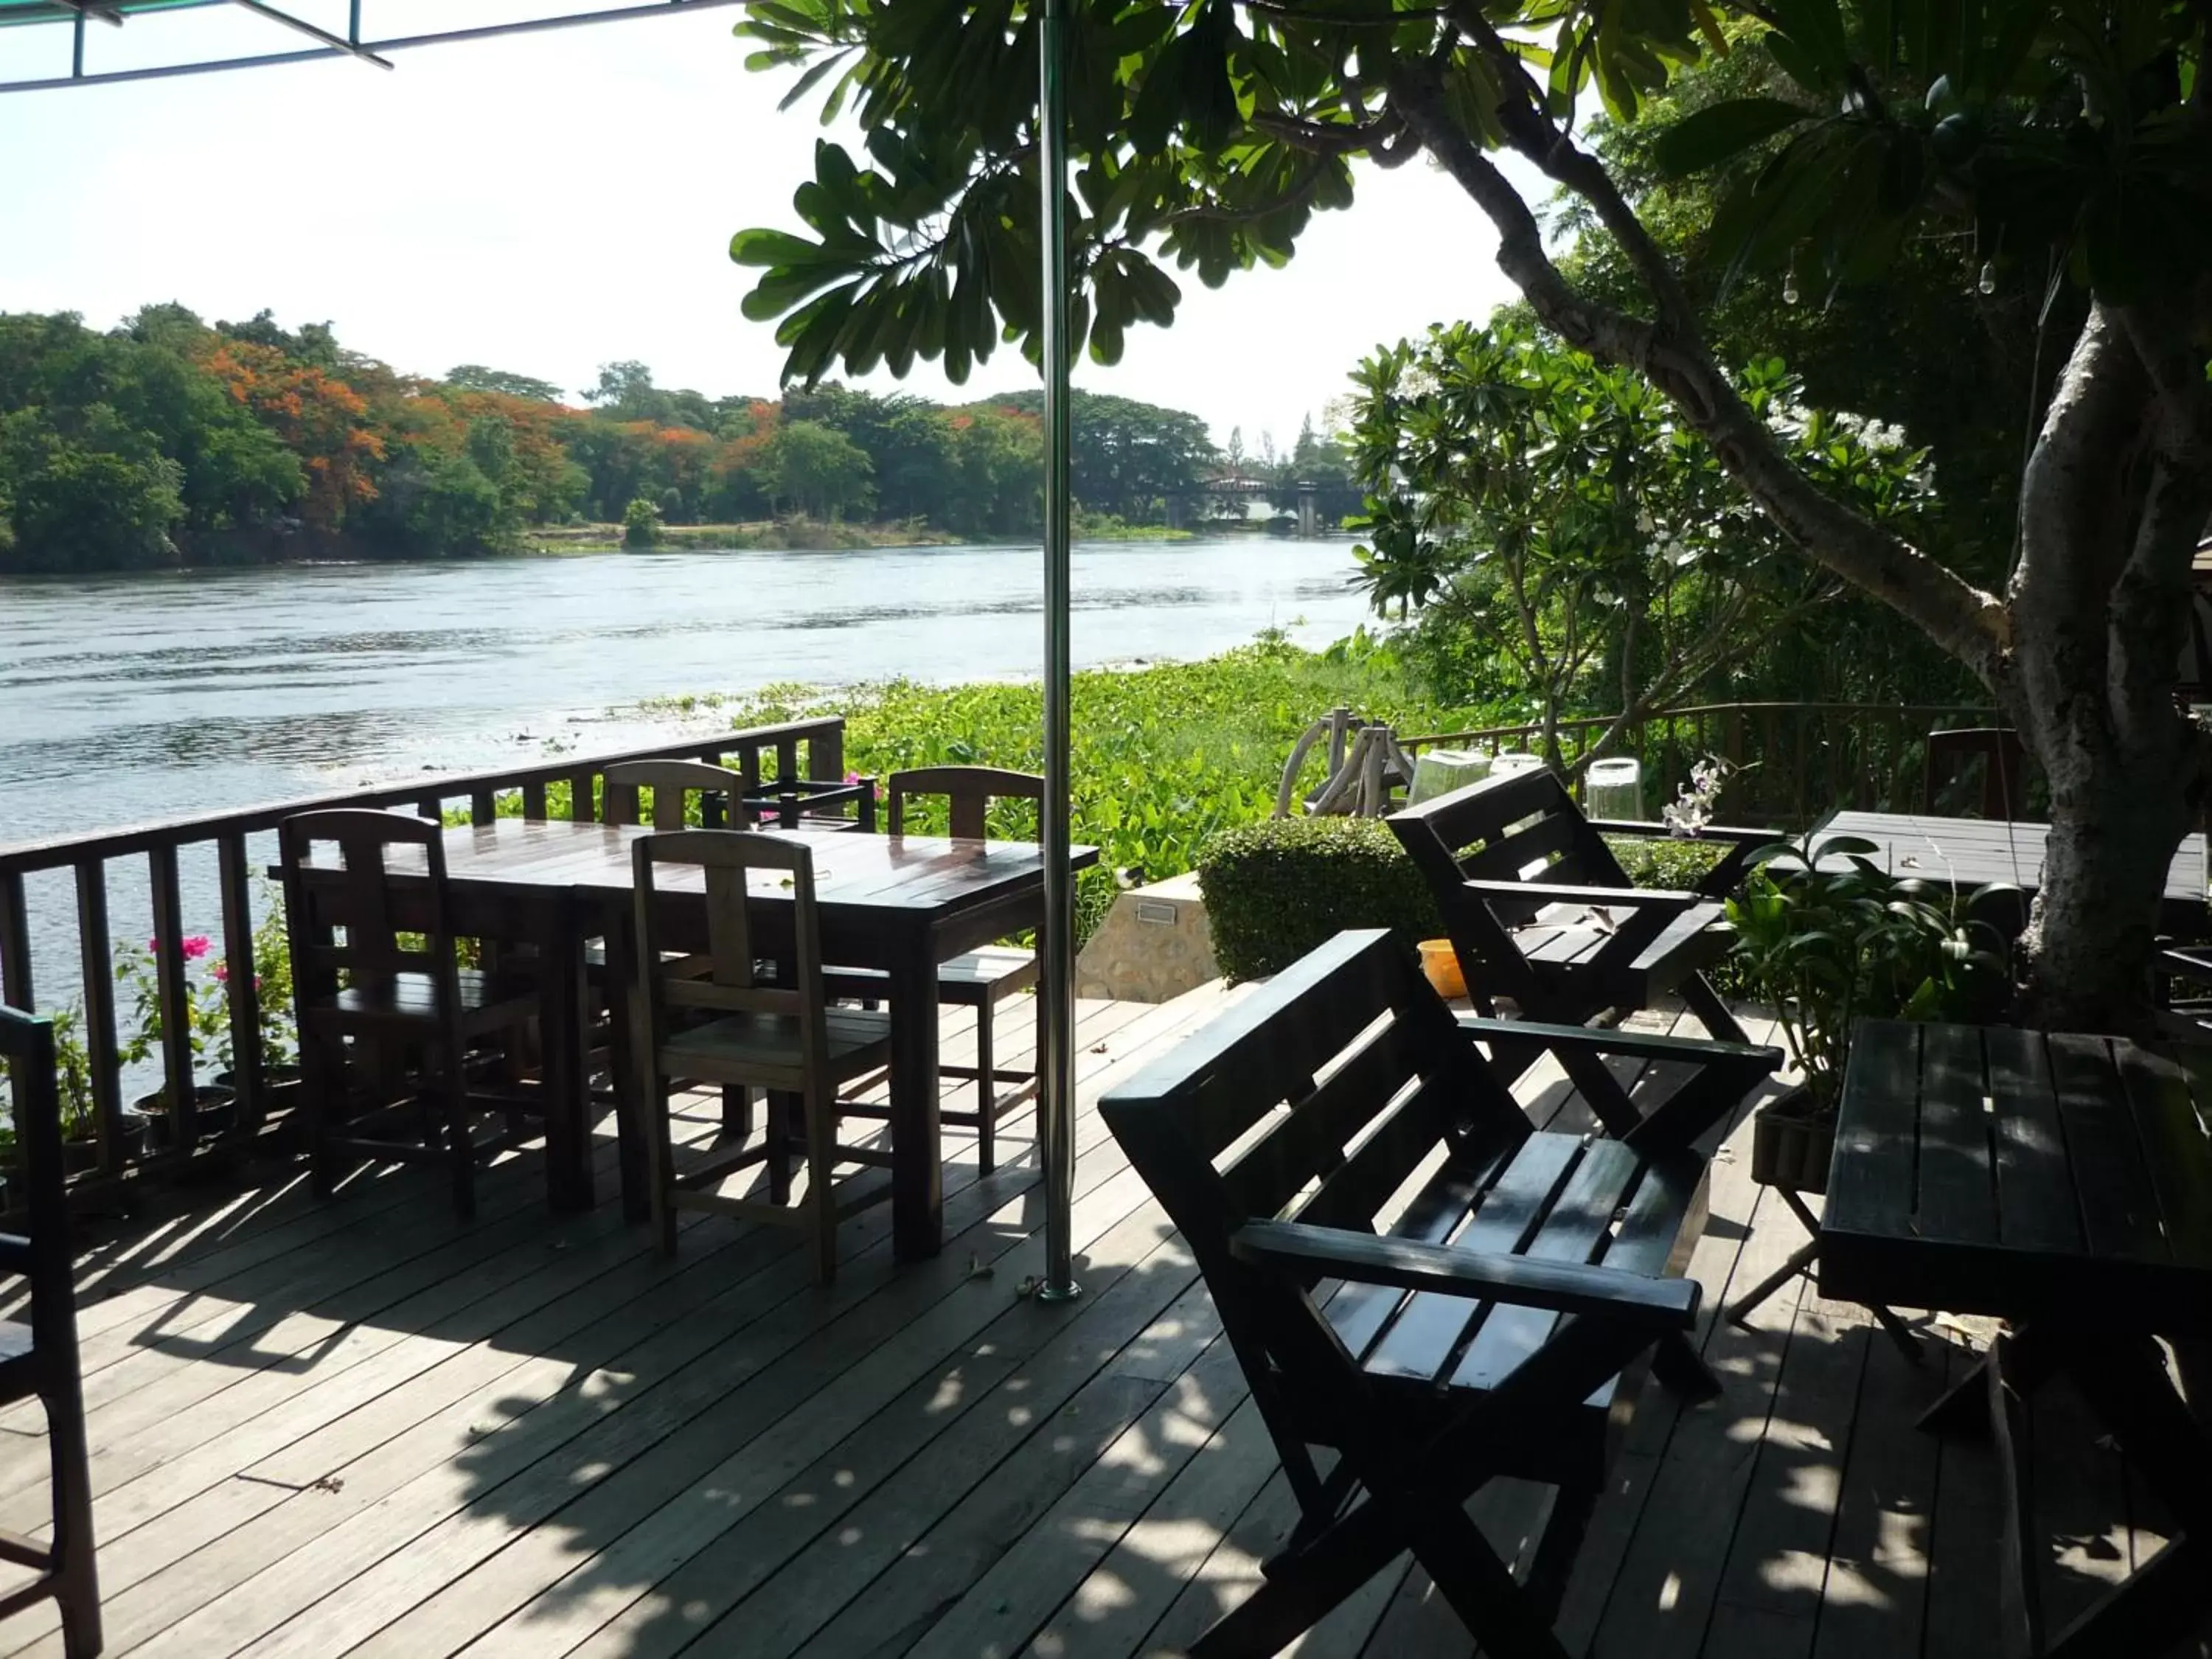 River view in The RiverKwai Bridge Resort